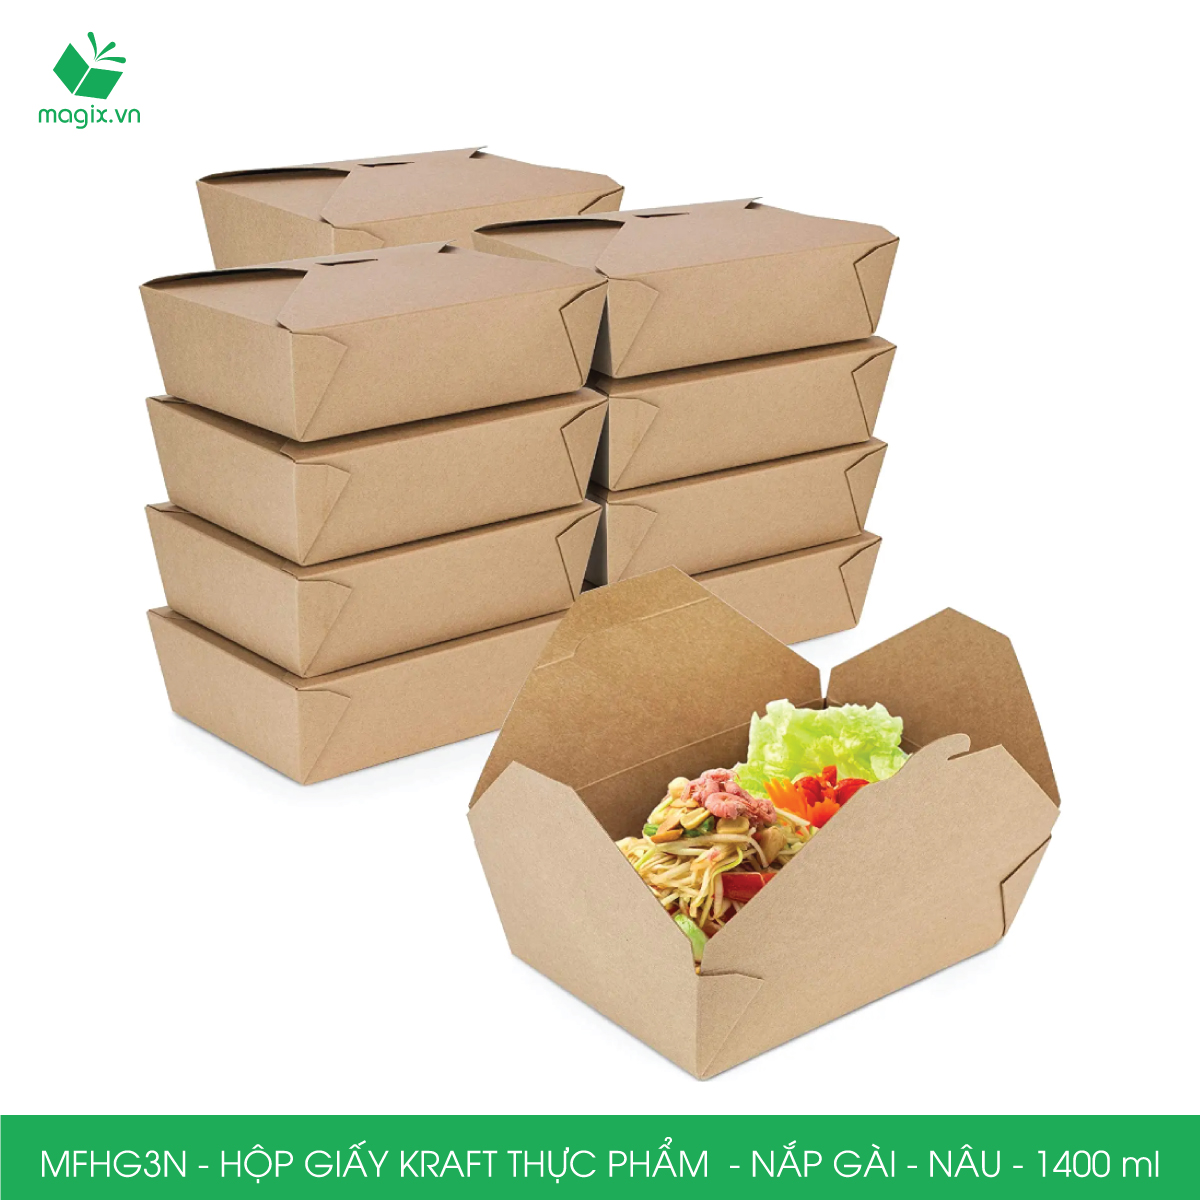 MFHG3N -100 hộp giấy kraft thực phẩm 1400ml, hộp giấy nắp gập màu nâu đựng thức ăn, hộp giấy nắp gài gói đồ ăn mang đi 